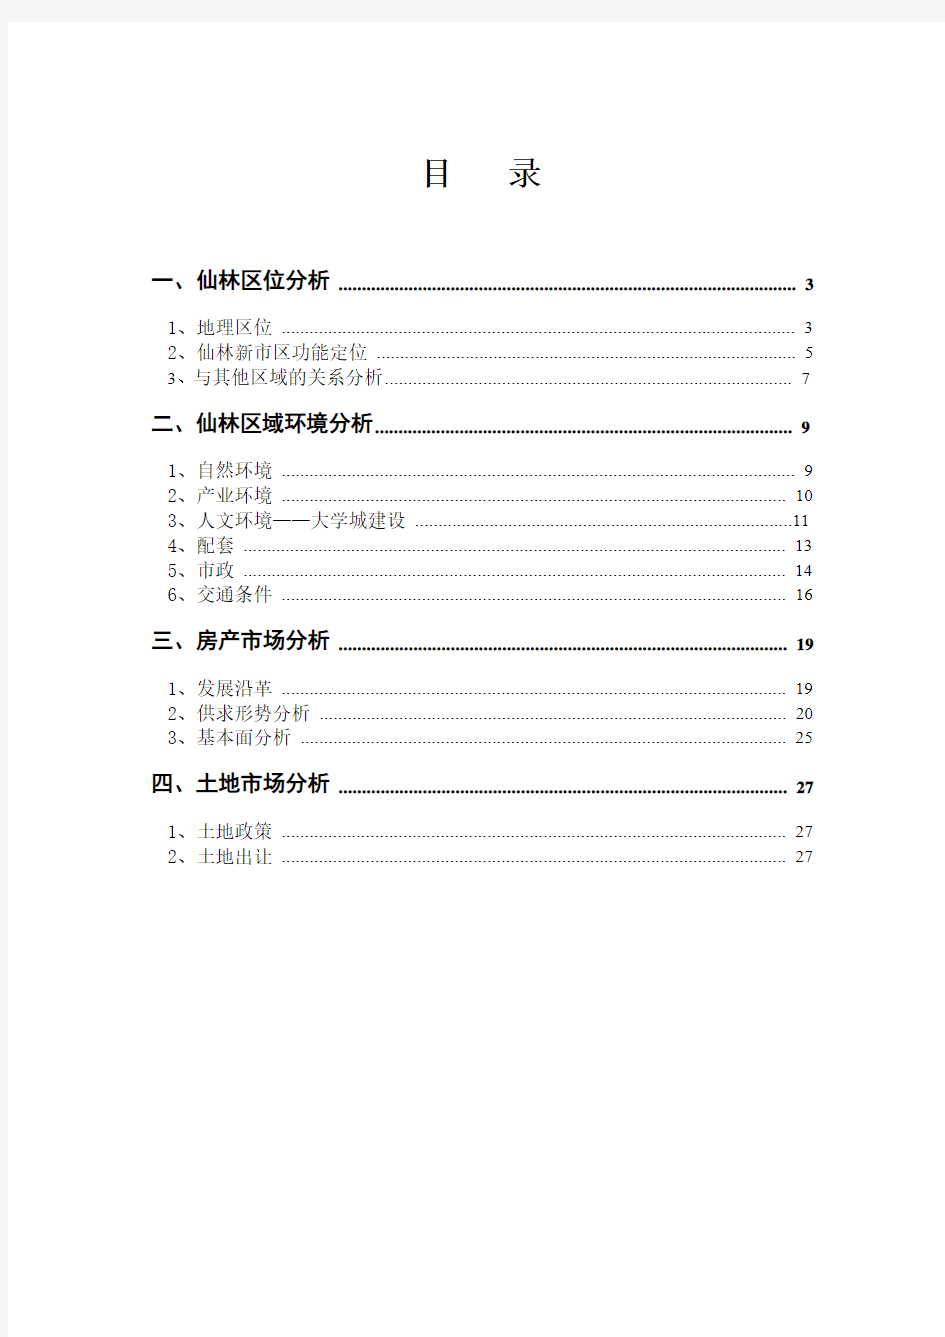 南京仙林板块房地产市场调研报告-30页-2009年